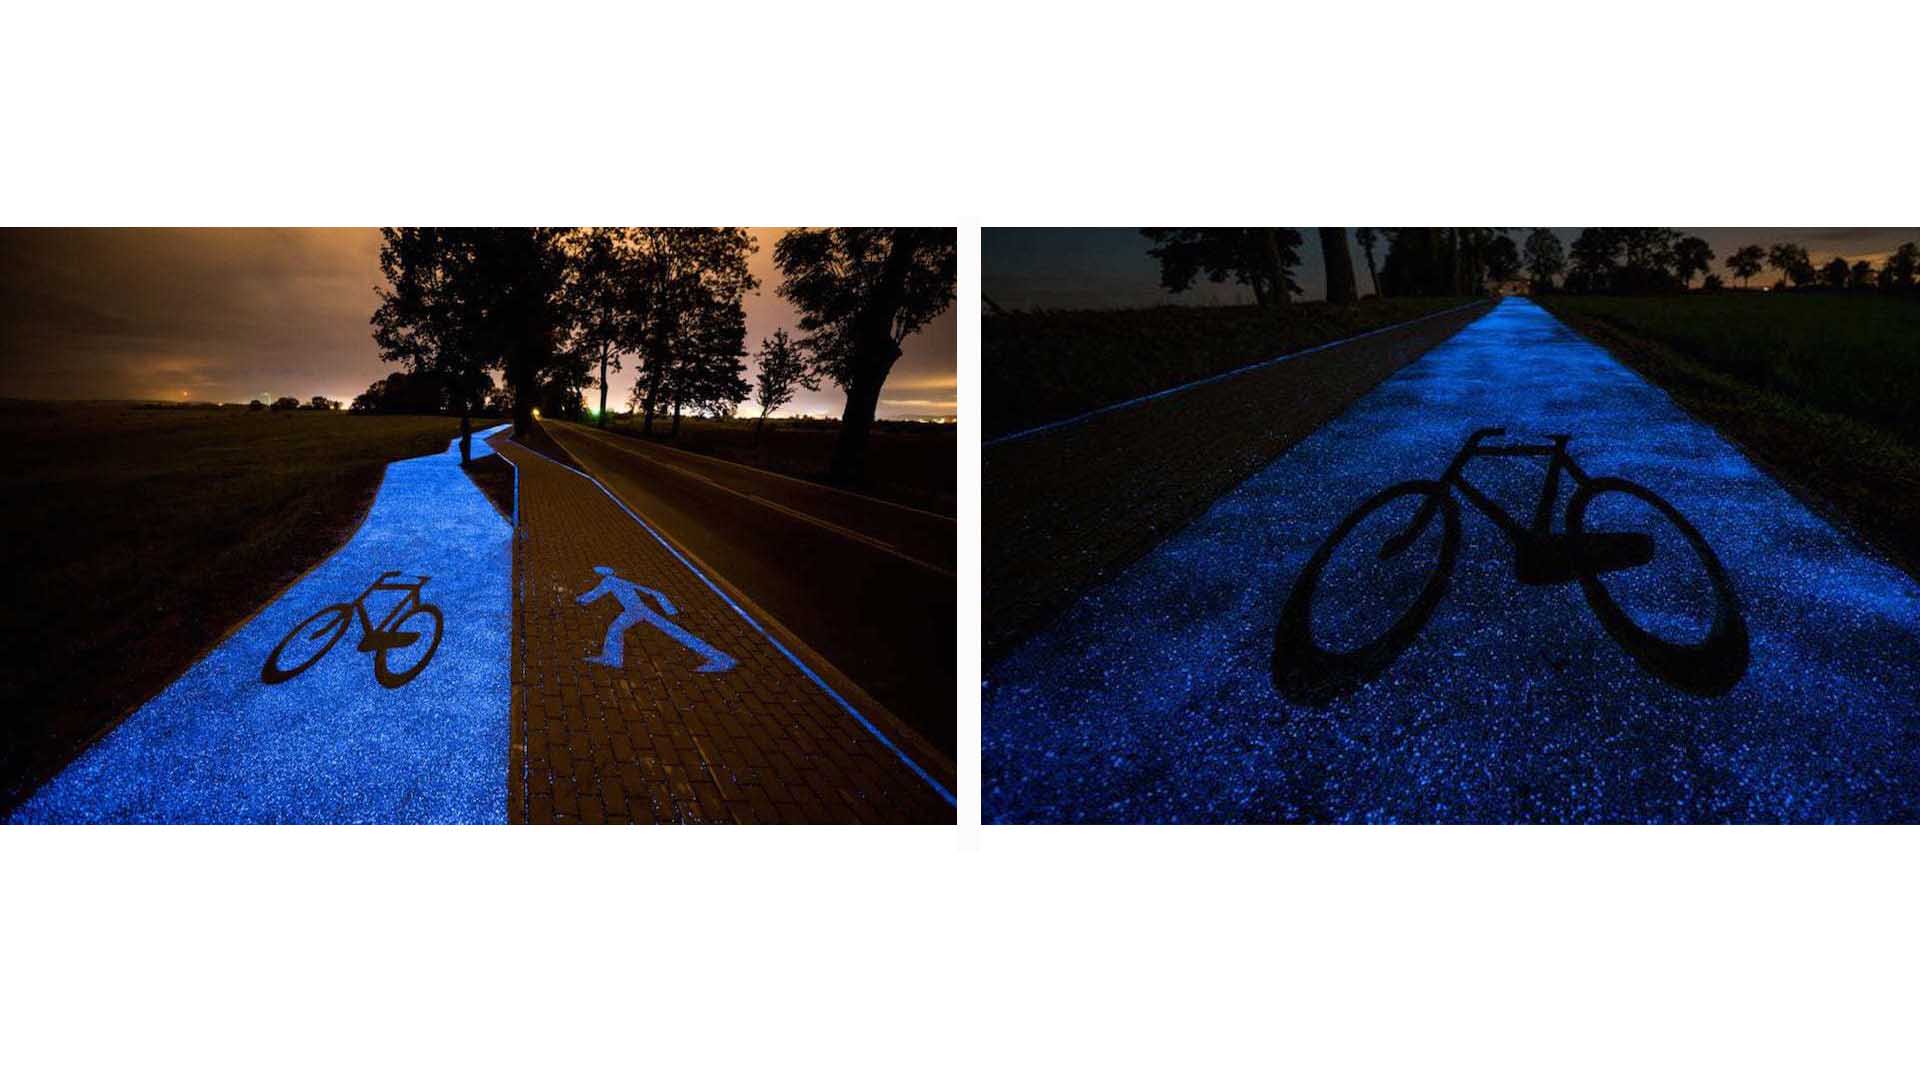 El carril que se asemeja al cielo estrellado permitirá a los ciclistas pedalear durante la noche sin temor a sufrir algún accidente producto de la oscuridad